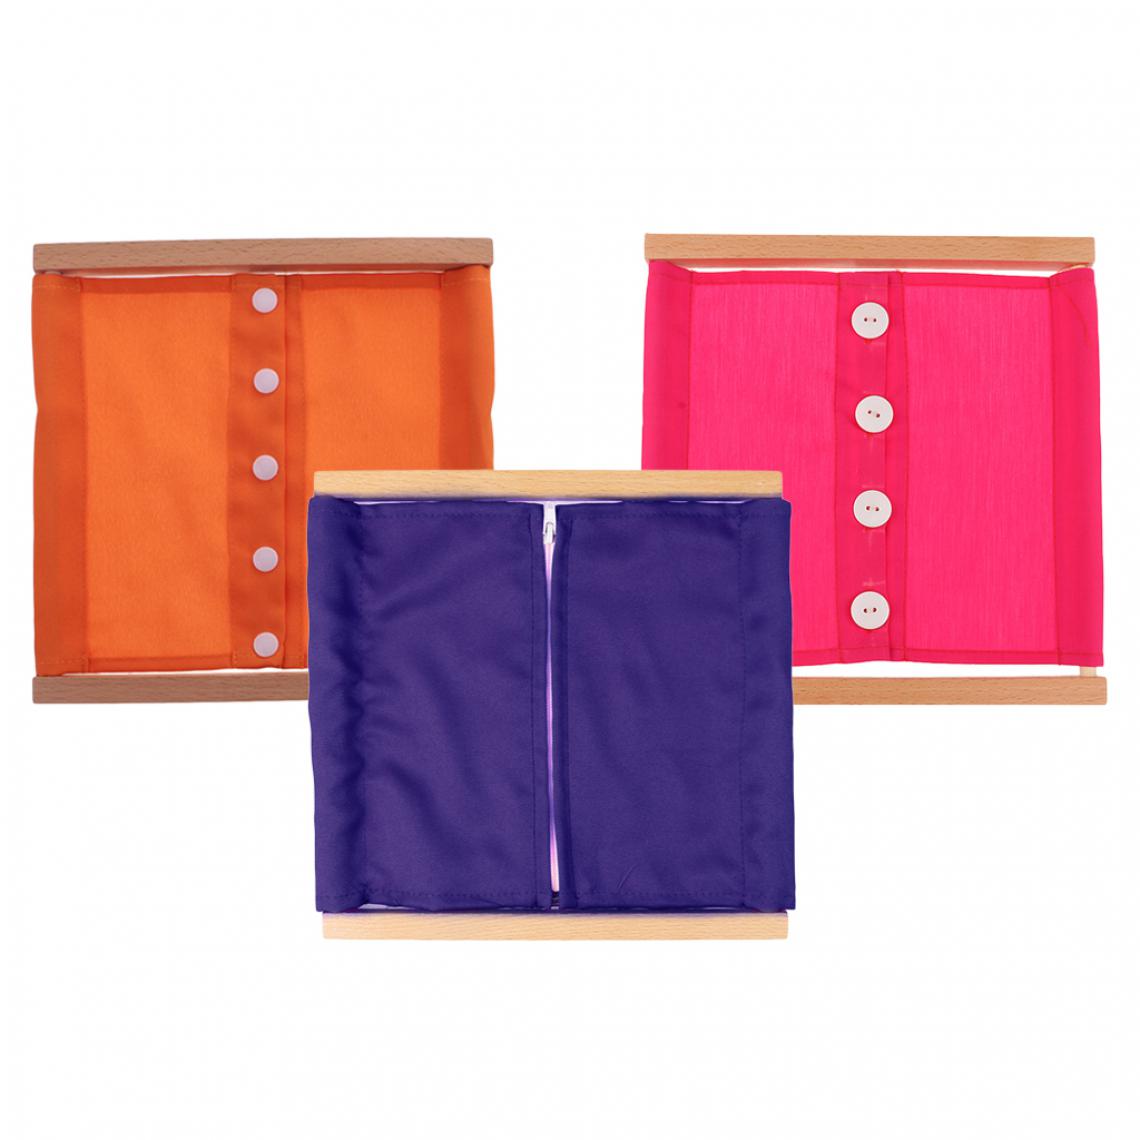 marque generique - 3 Sets Cadre de Vêtement Montessori Matériaux Jouets Educatifs pour Pratiquer Enfant Bébé s'Habiller Boutonner / Zipper - Puzzles Enfants